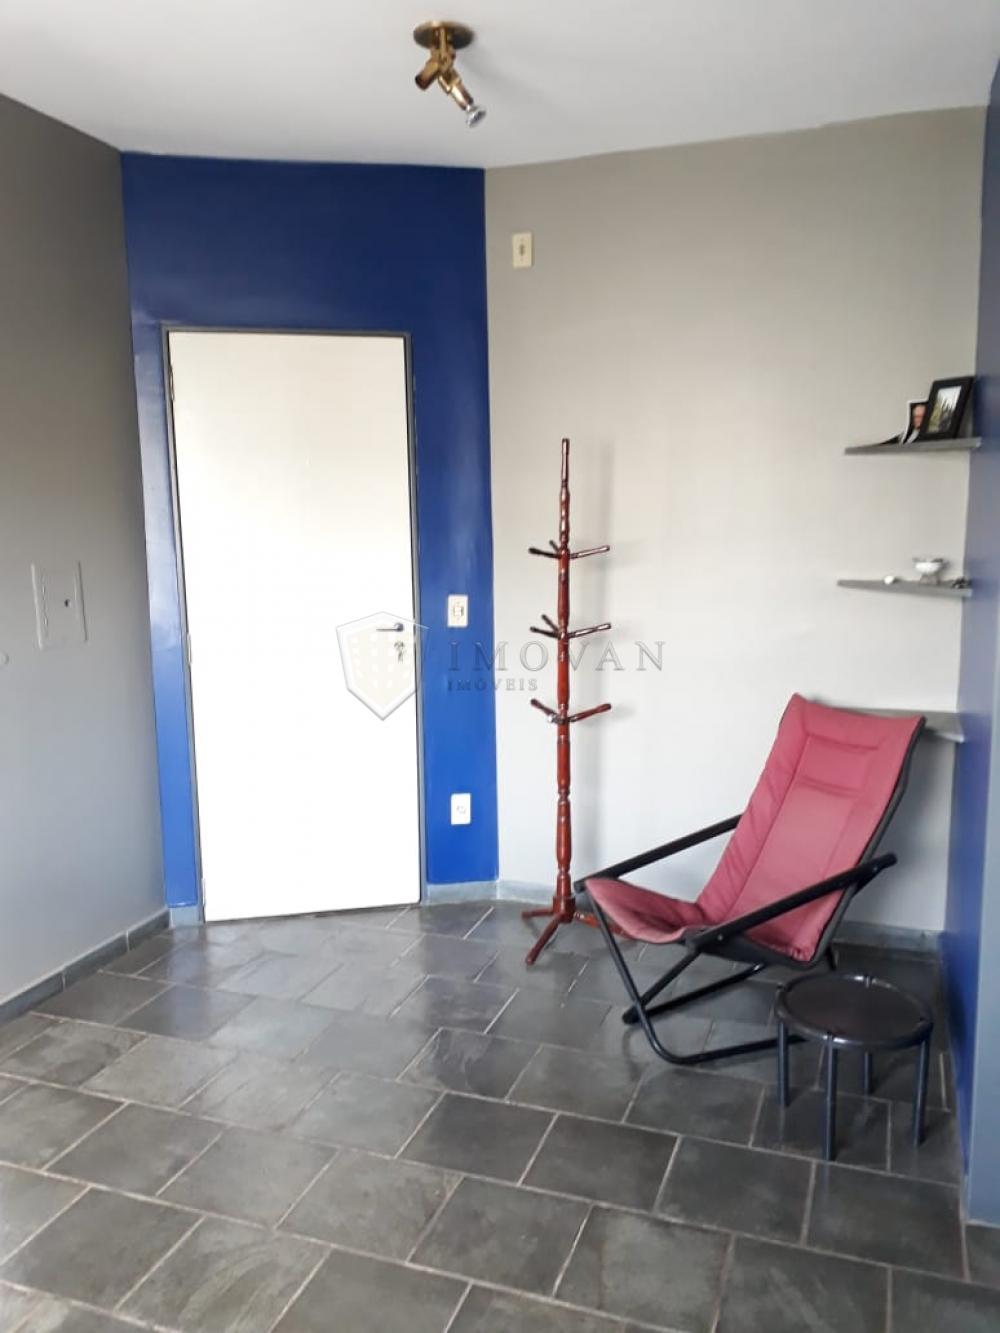 Alugar Apartamento / Padrão em Ribeirão Preto R$ 950,00 - Foto 5